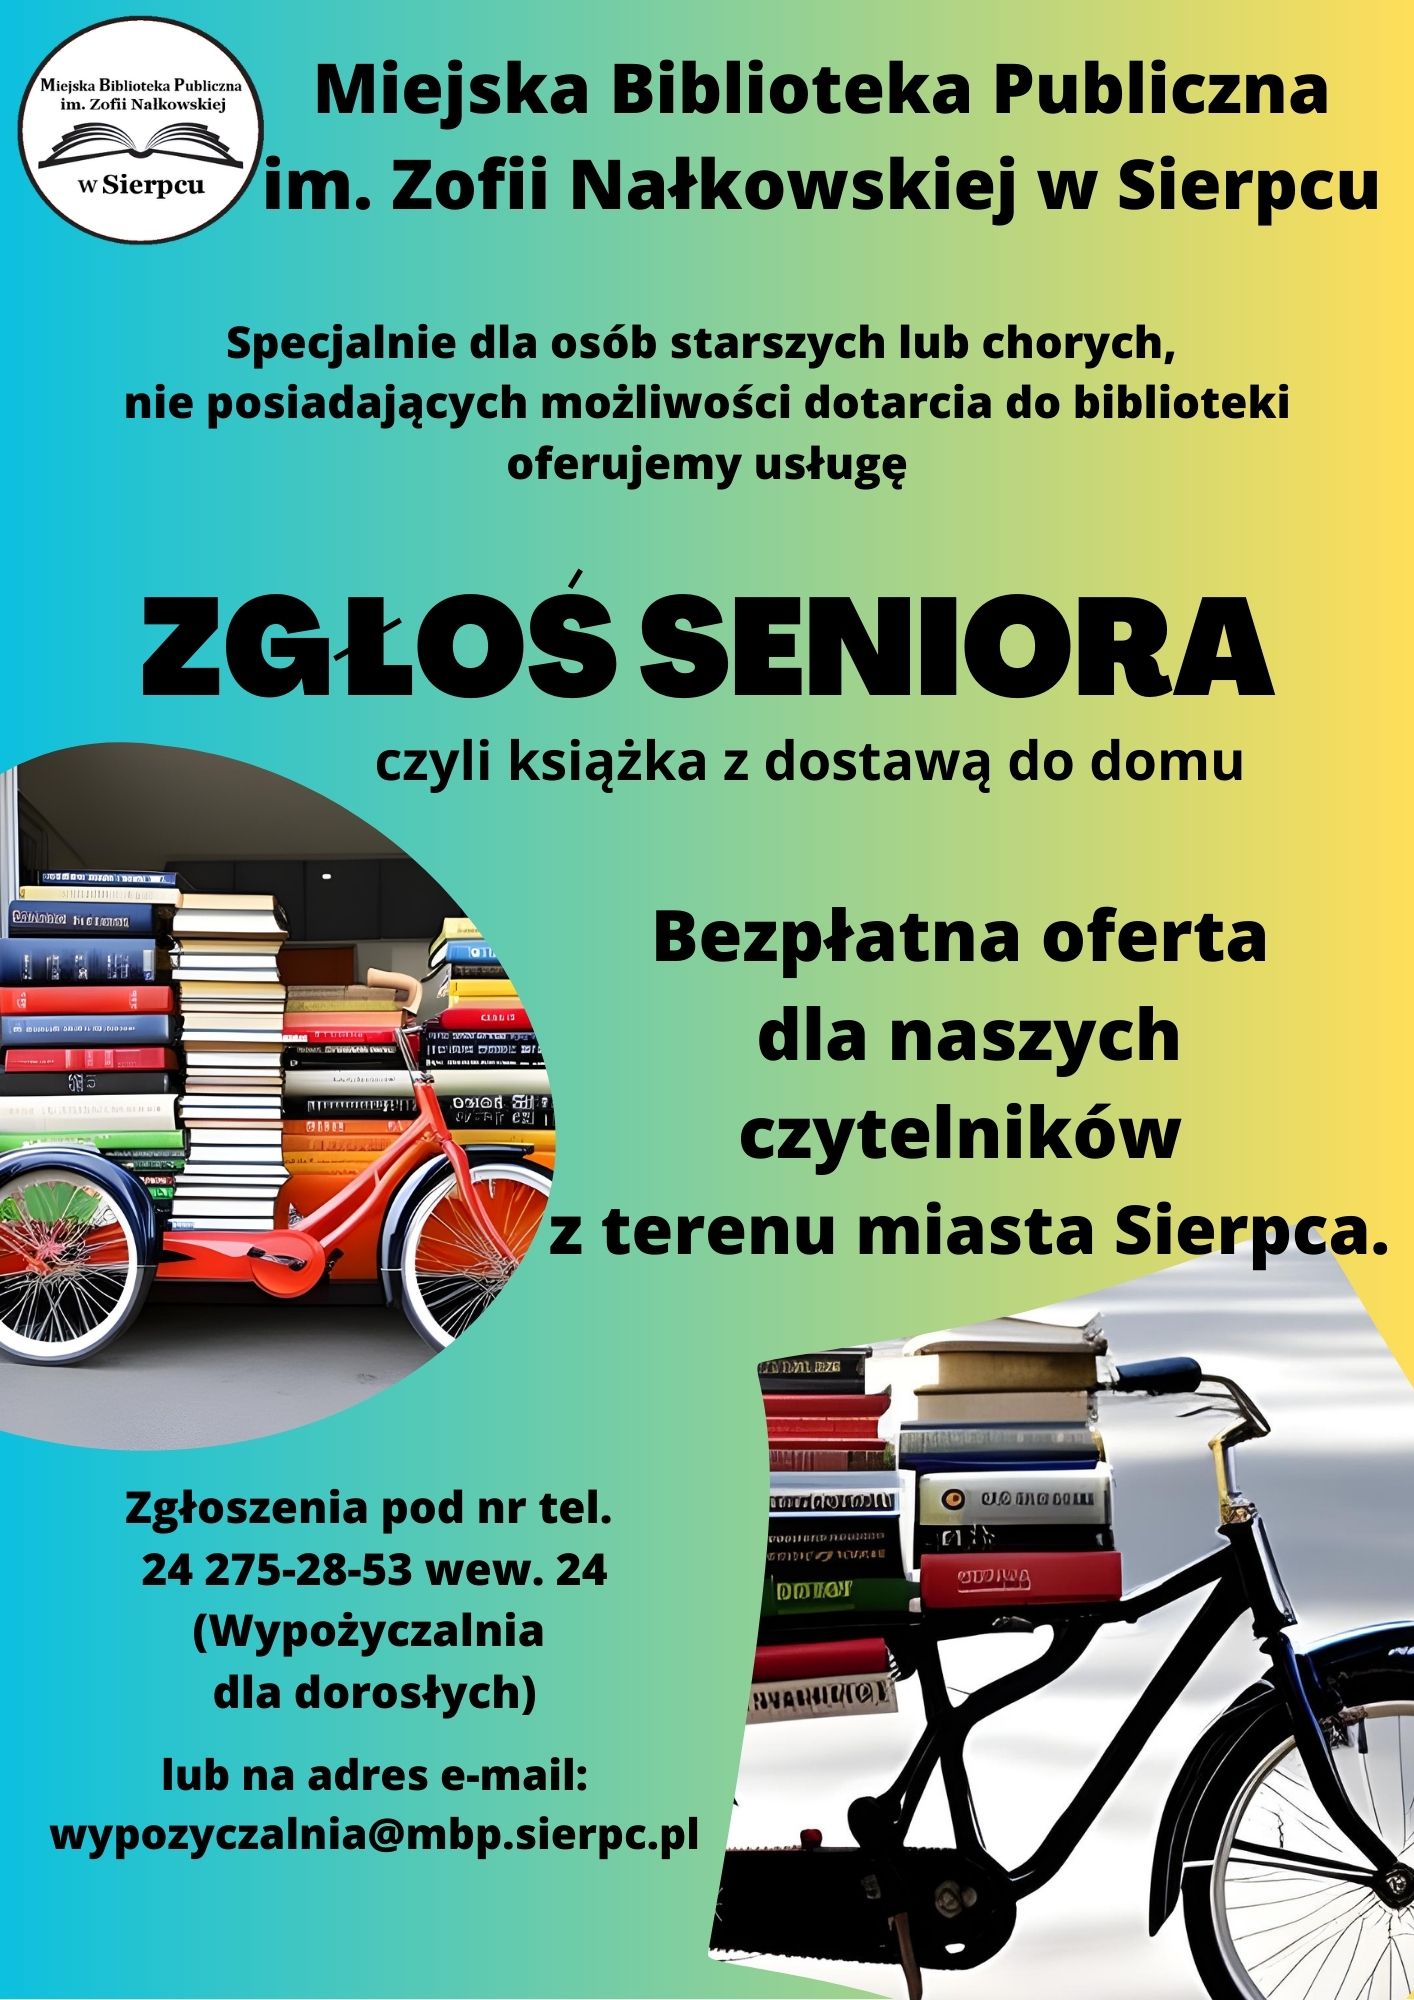 Plakat promujący akcję Zgłoś seniora. książka z dostawą do domu